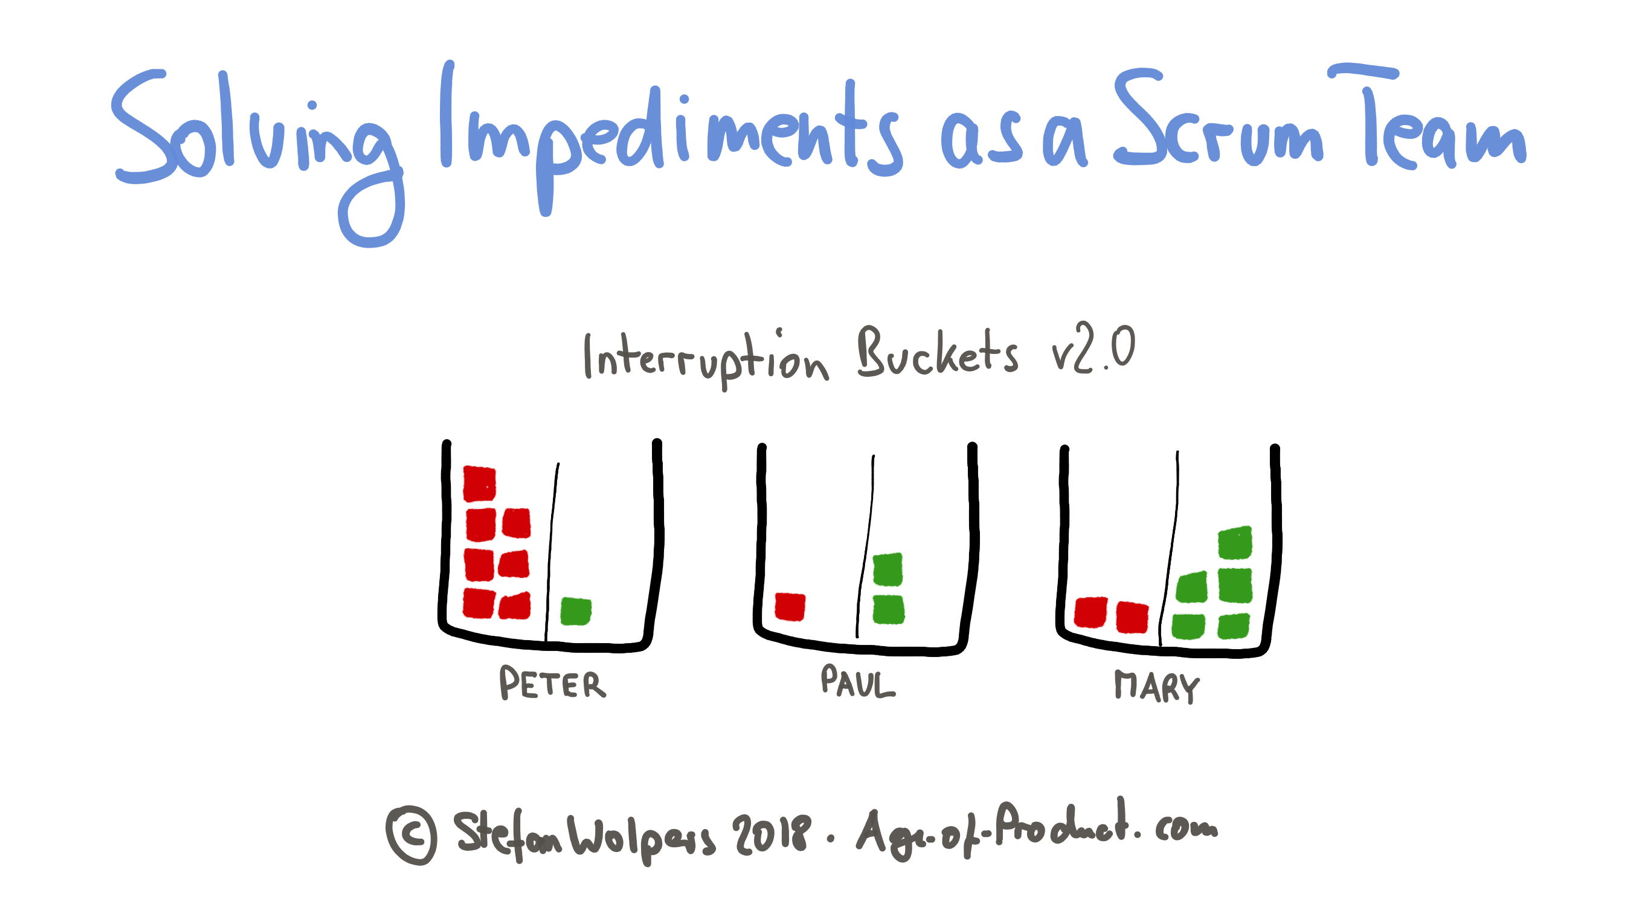 Interruption bucket version 2 — Version 1 of the interruption bucket — Solving Impediments as a Scrum Team